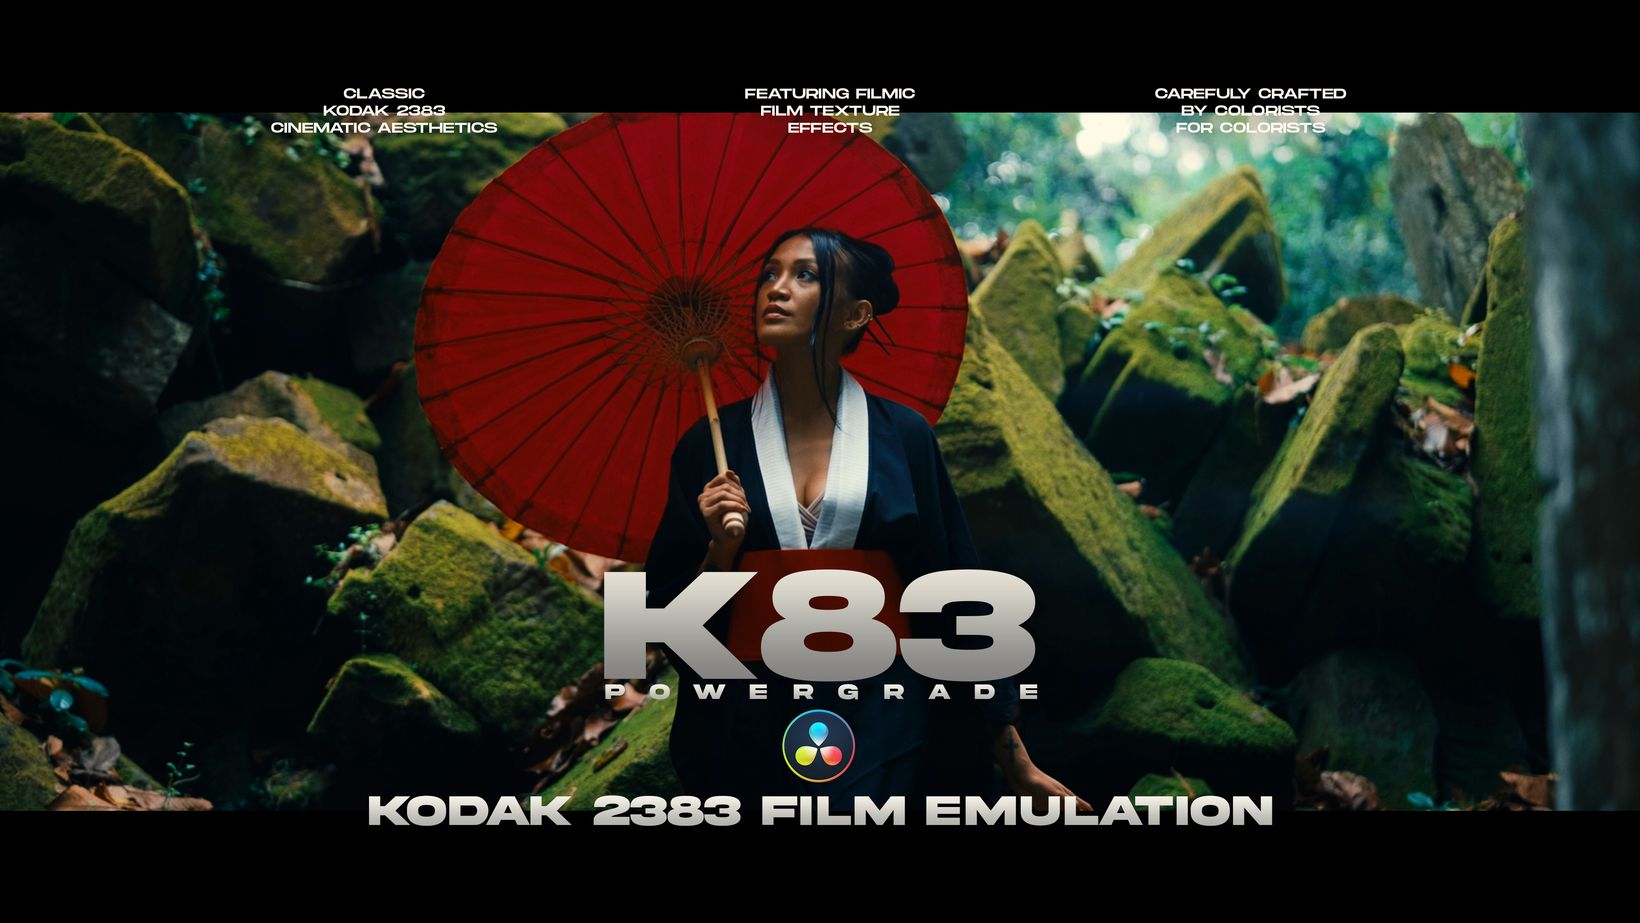 7种现代经典好莱坞电影级 Kodak 2383 灵感美学胶片模拟调色预设 达芬奇PowerGrade + LUT ( K83 Cinematic PowerGrade | Kodak 2383 Inspired Film Emulation ) APP UI 第1张